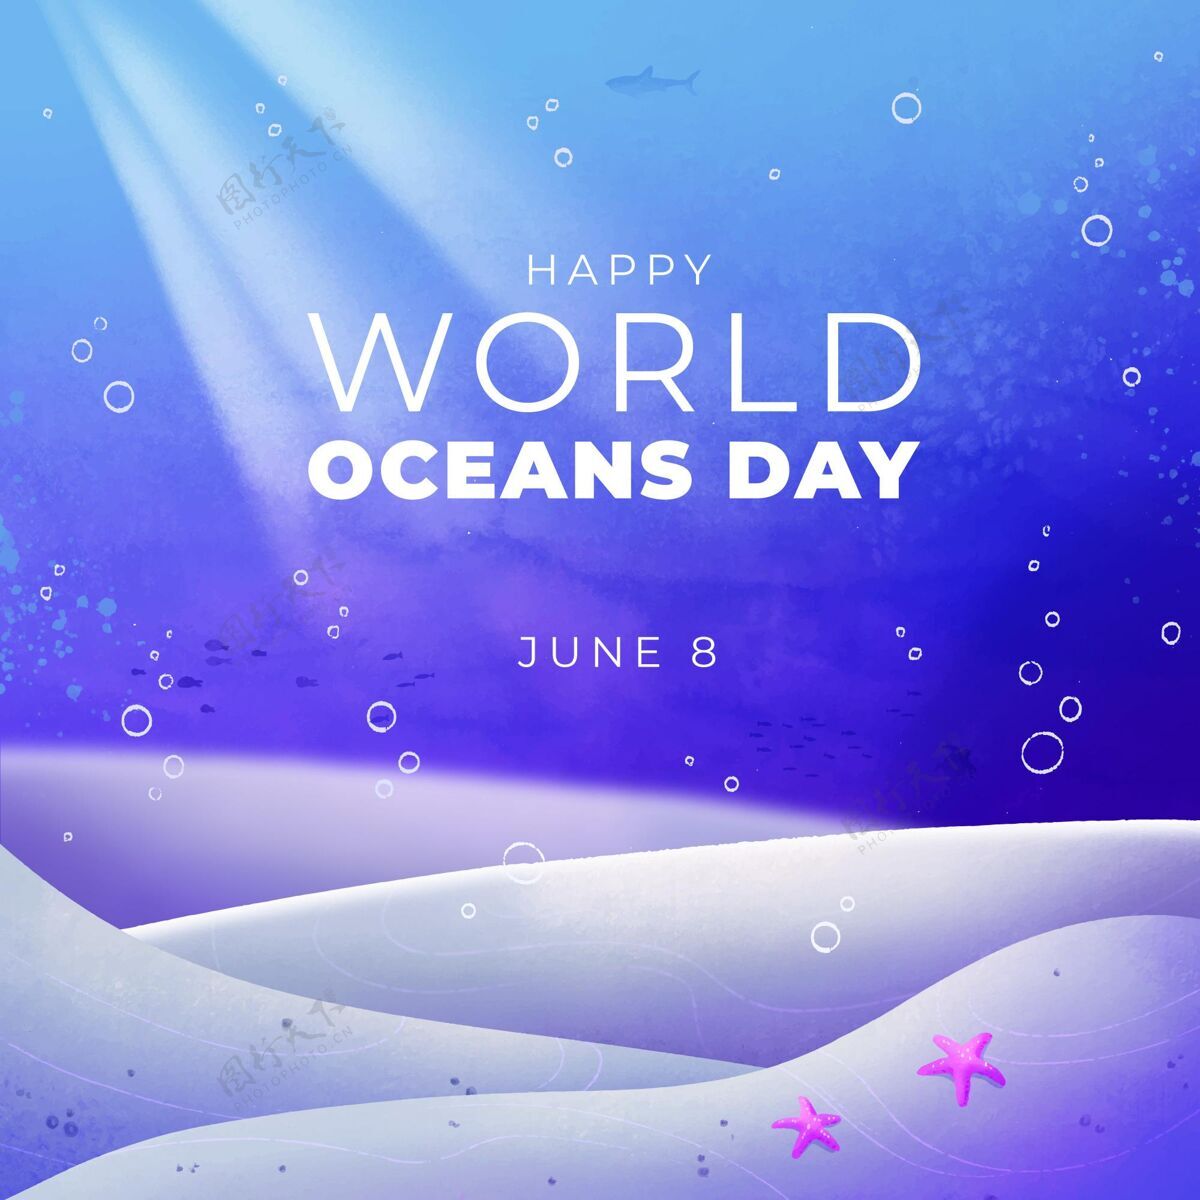 国际手绘水彩画世界海洋日插画地球庆典活动